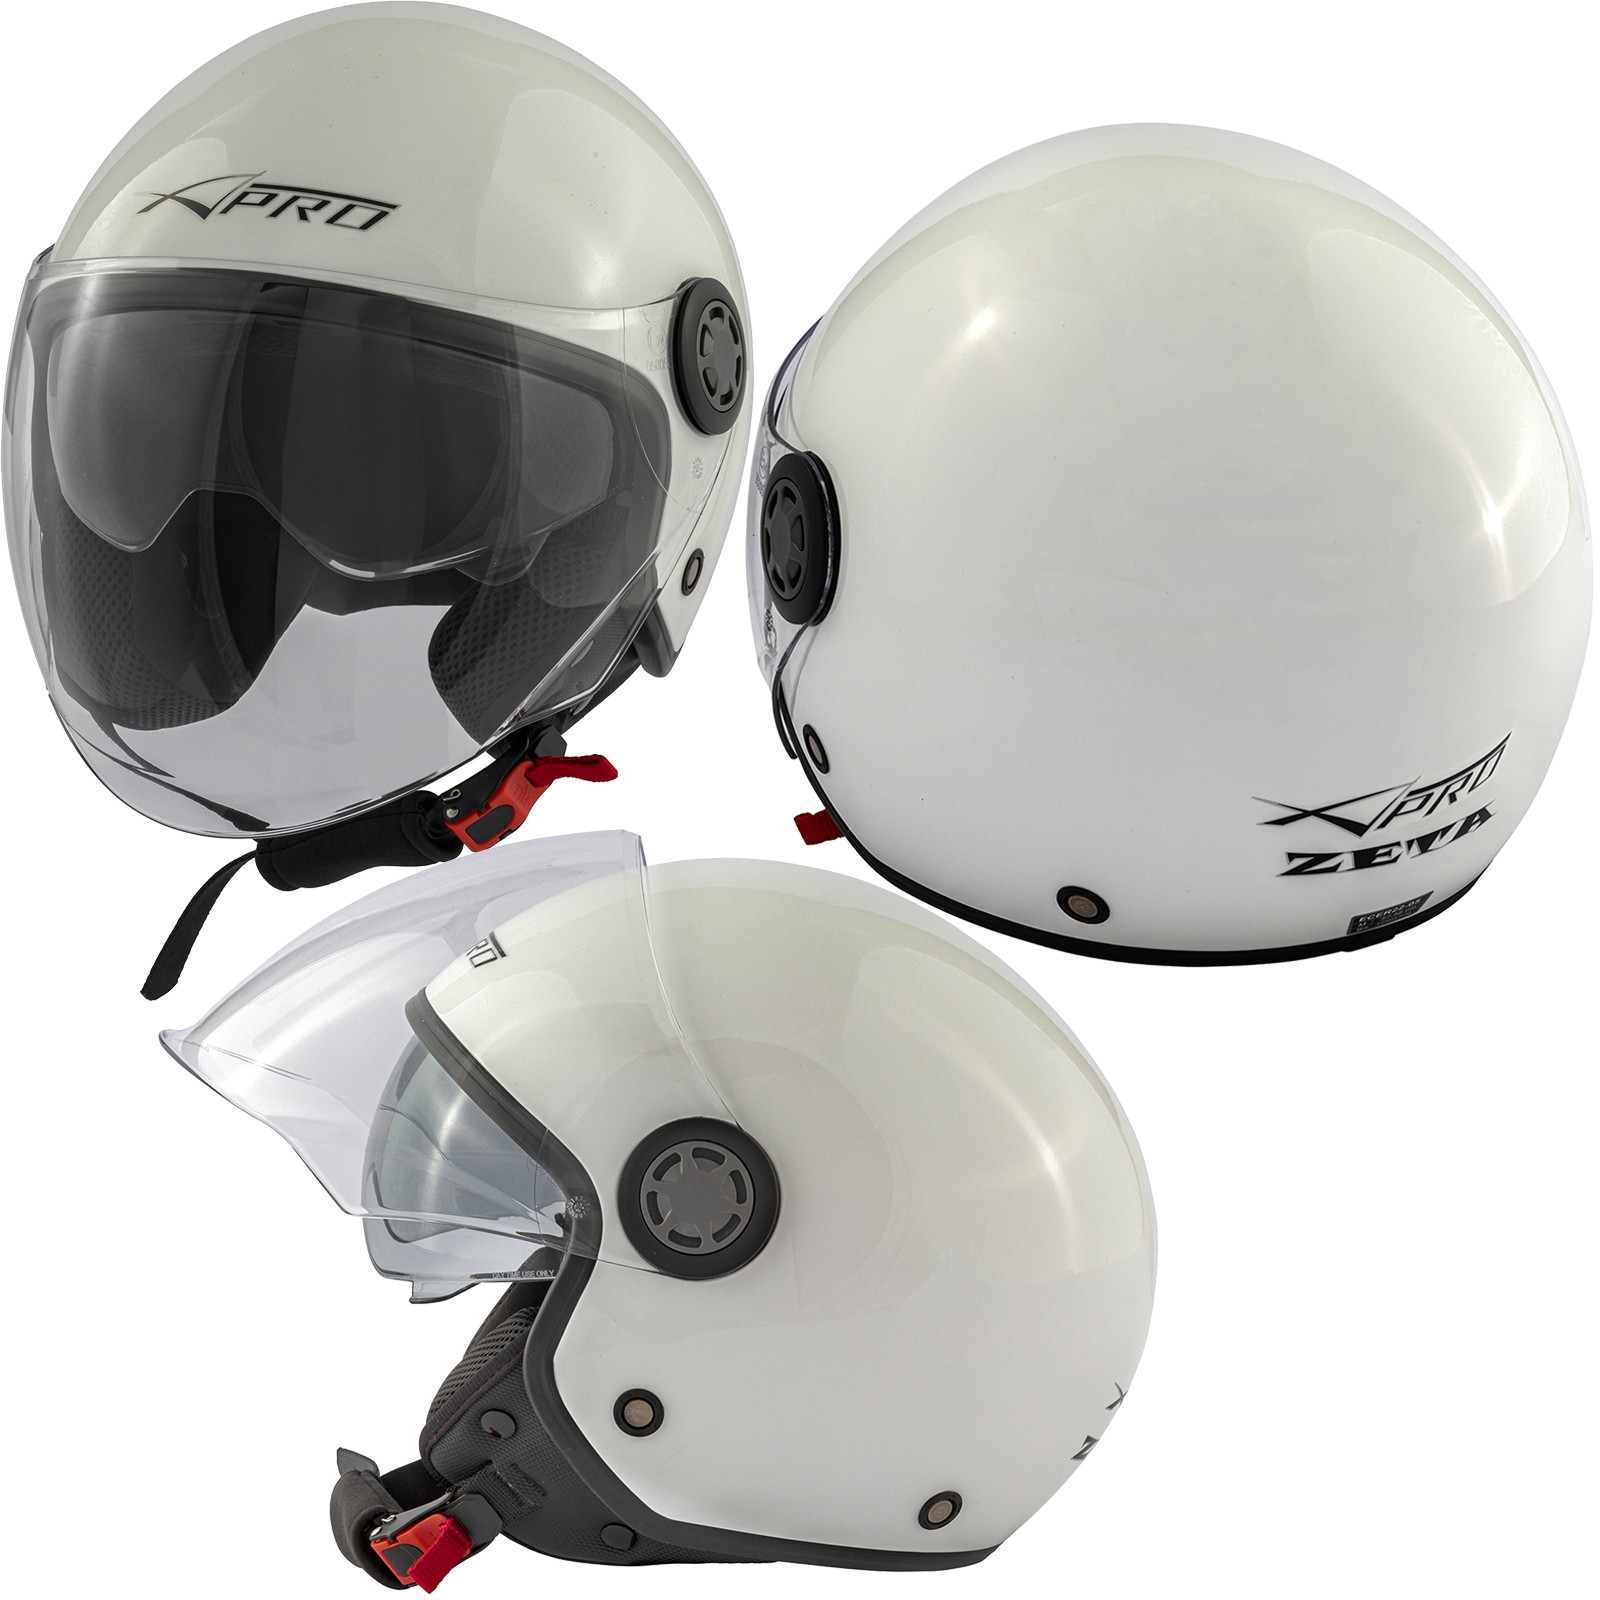 Abbigliamento Moto e Accessori - Jet Scooter Casco ECE 22 06 Moto  Certificato Lunga Visiera Bianco Parasole A-Pro